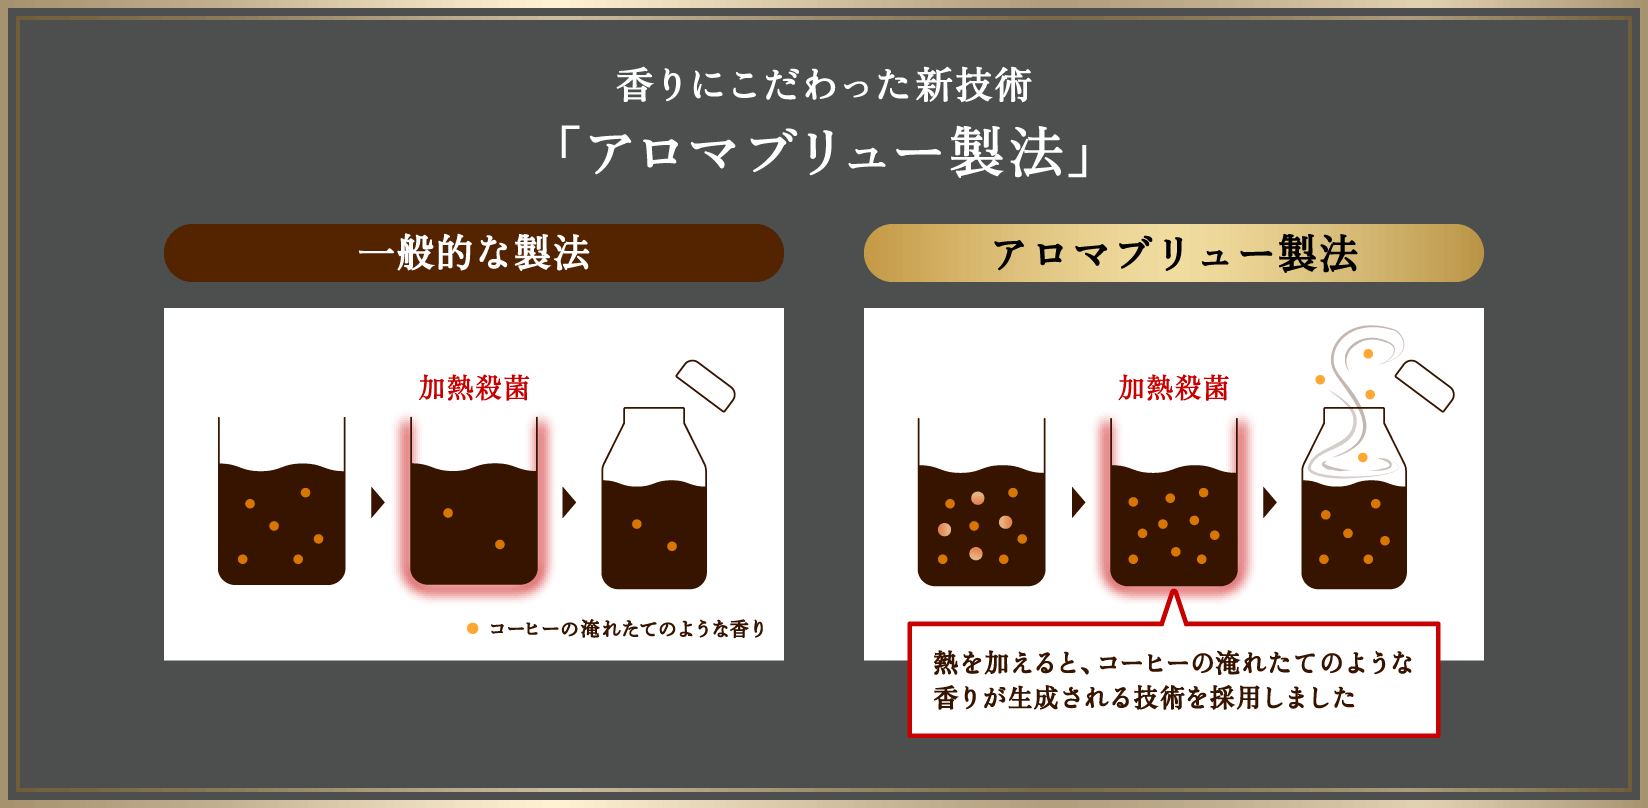 香りにこだわった新技術 「アロマブリュー製法」一般的な製法 加熱殺菌 コーヒーの淹れたてのような香り 熱を加えると、コーヒーの淹れたてのような香りが生成される技術を採用しました